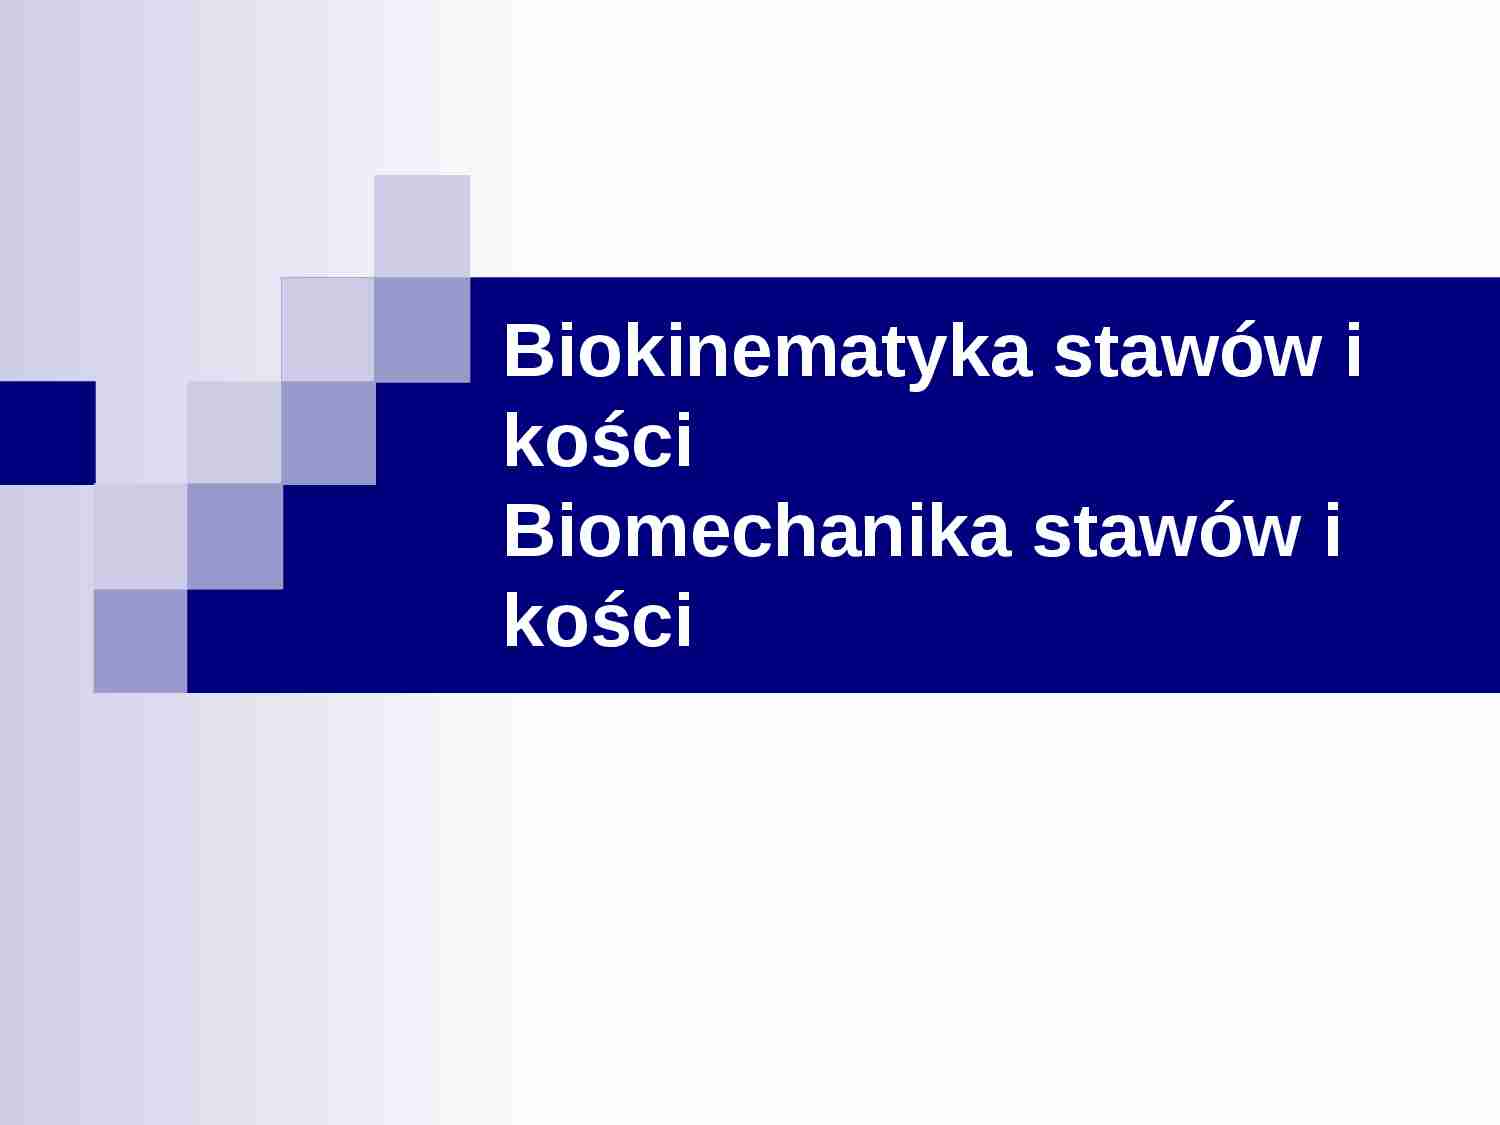 Biokinematyka stawów i kości - strona 1